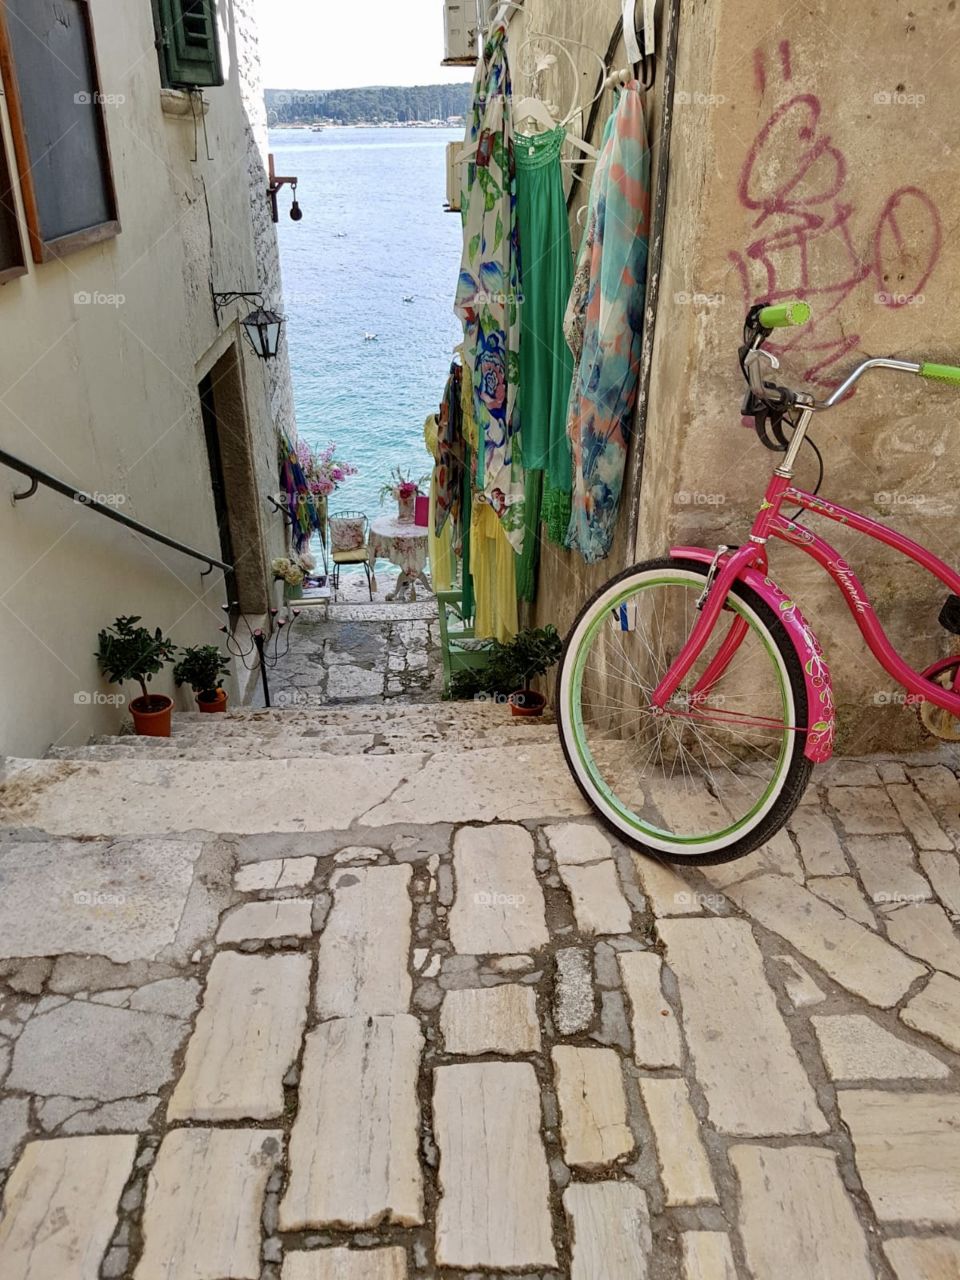 Bike in the streets of Croatia